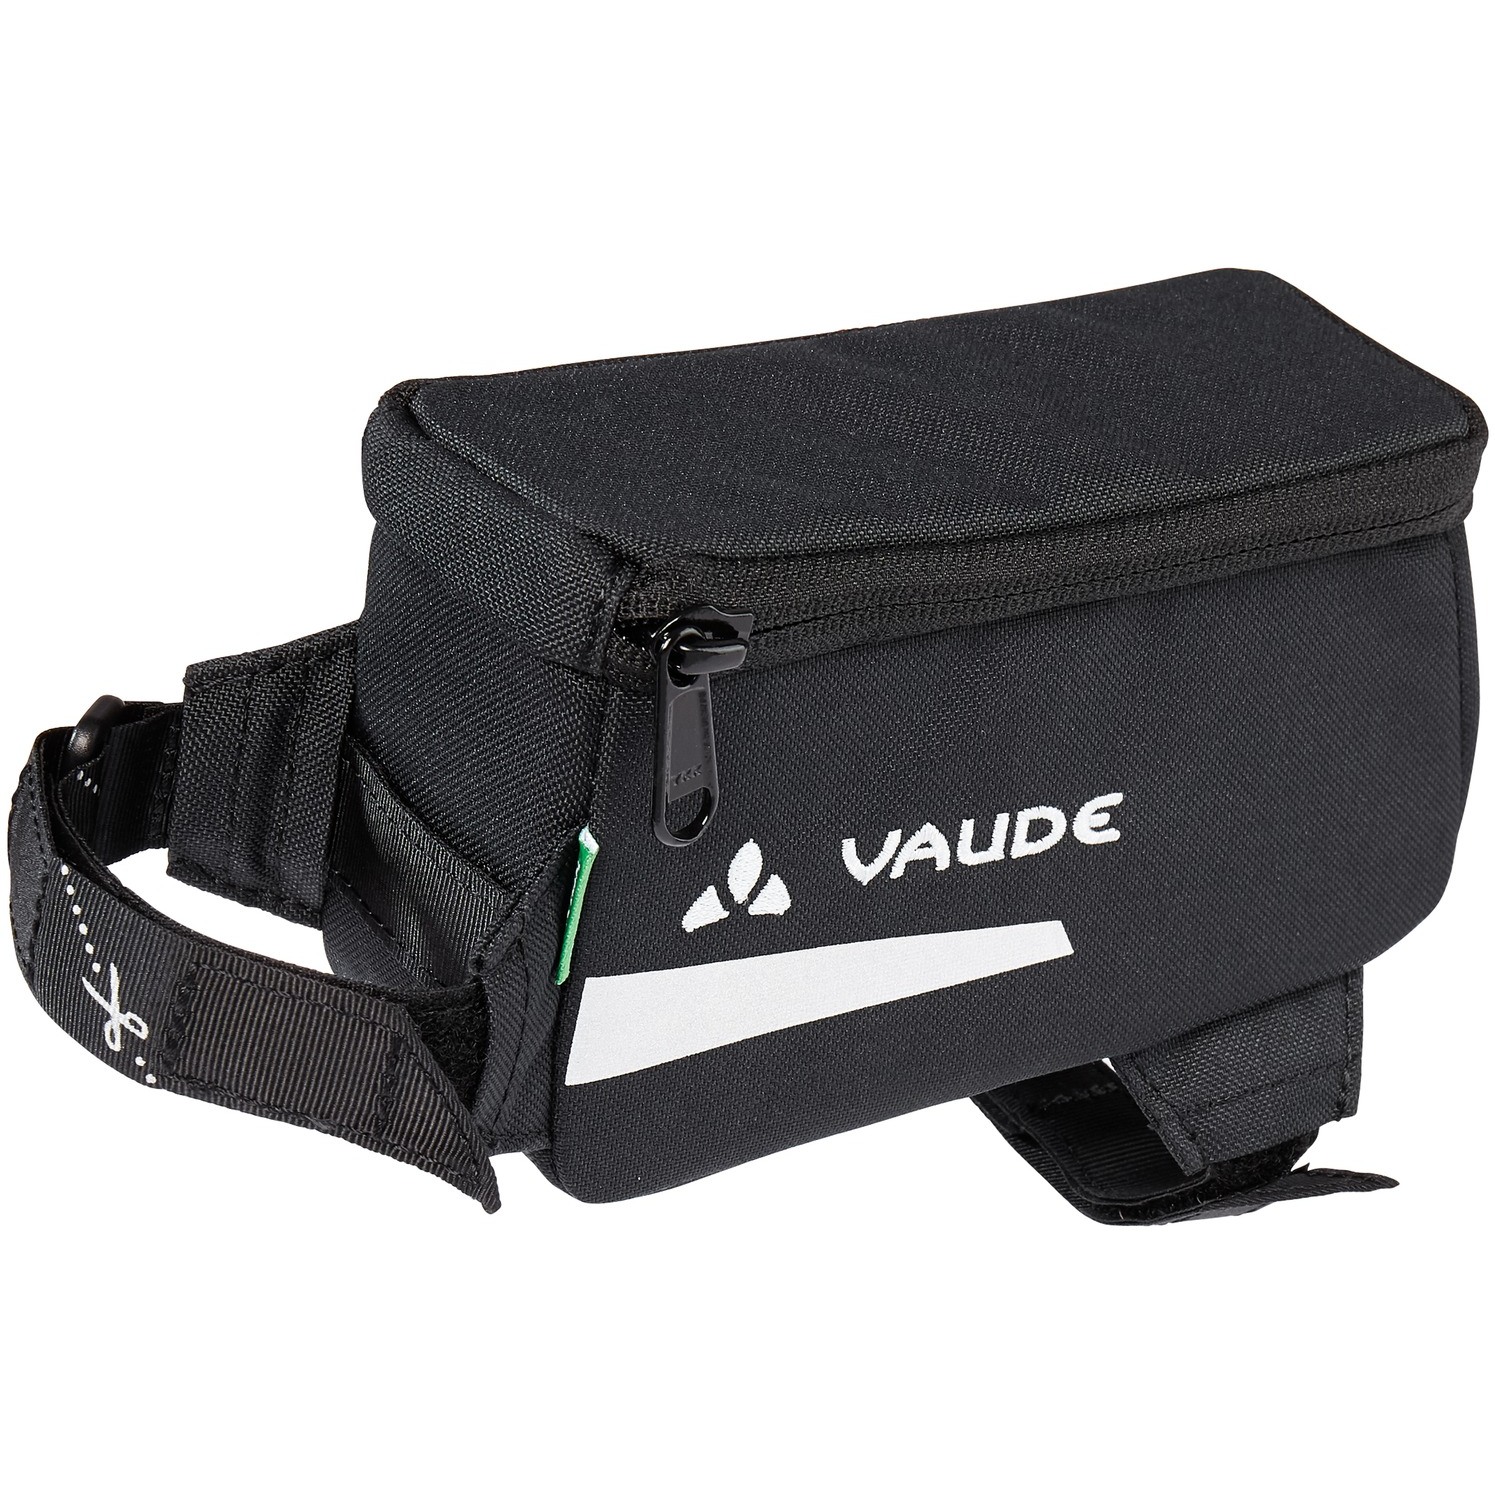 Produktbild von Vaude Carbo Bag II Fahrradtasche - 1L - schwarz